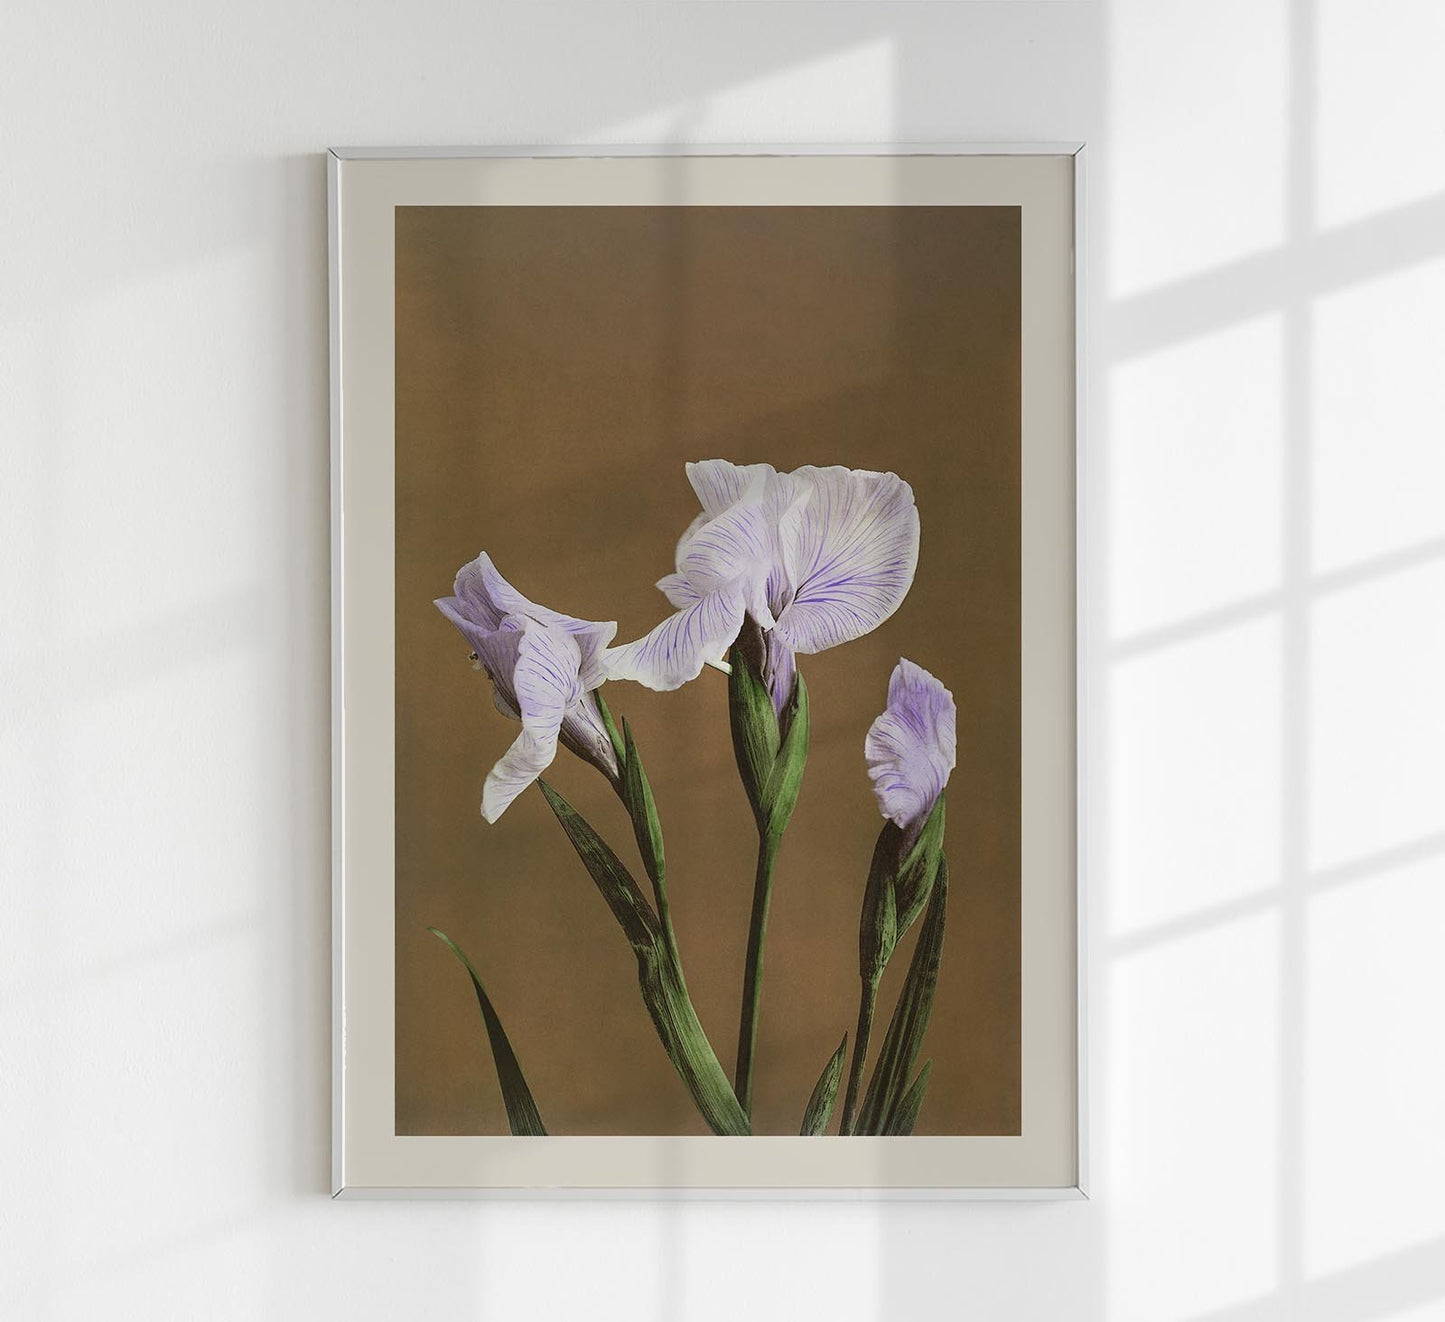 Three Iris Kæmpferi by Ogawa Kazumasa